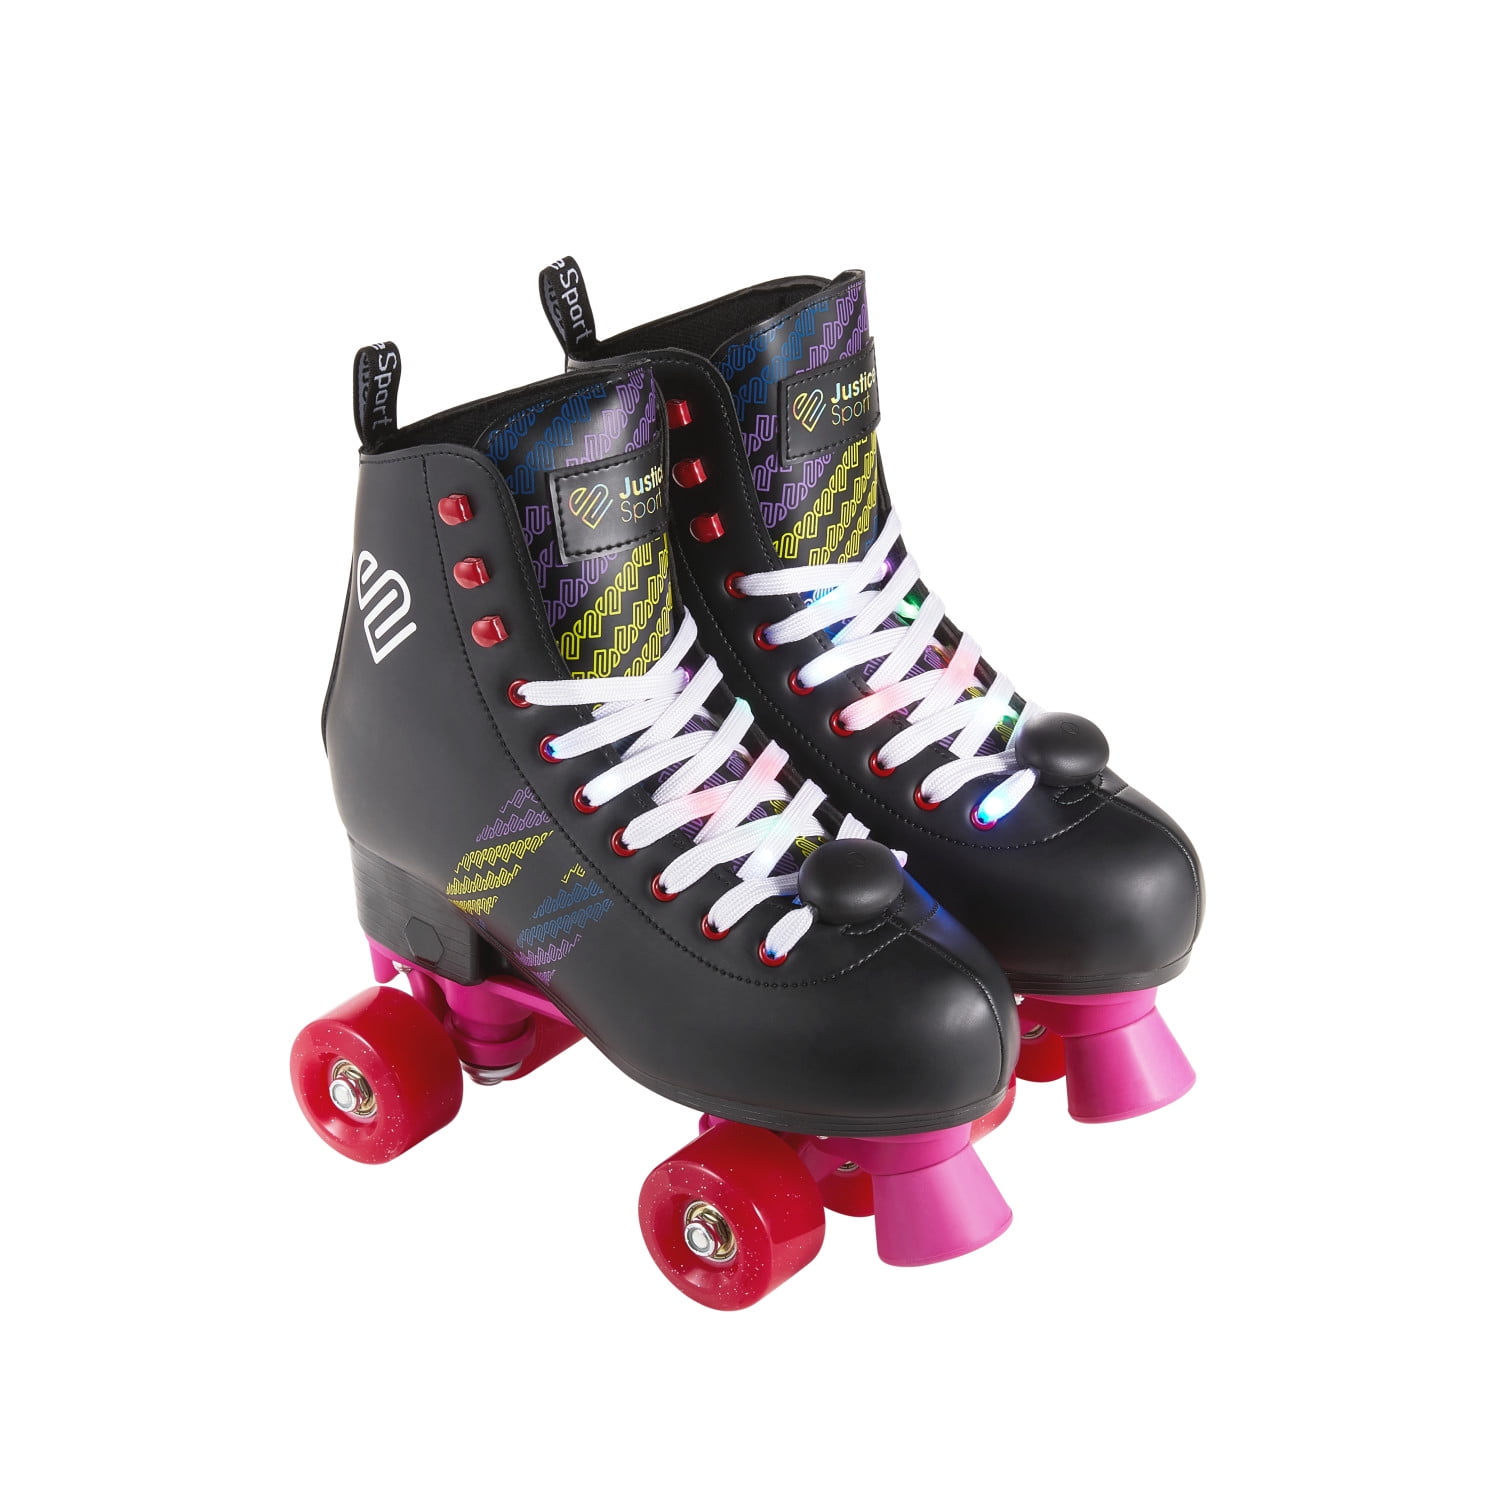 investering commentaar Nuttig Justice Quad Roller Skates for Teen Girls Ages 8+, Size 3-6 - Walmart.com